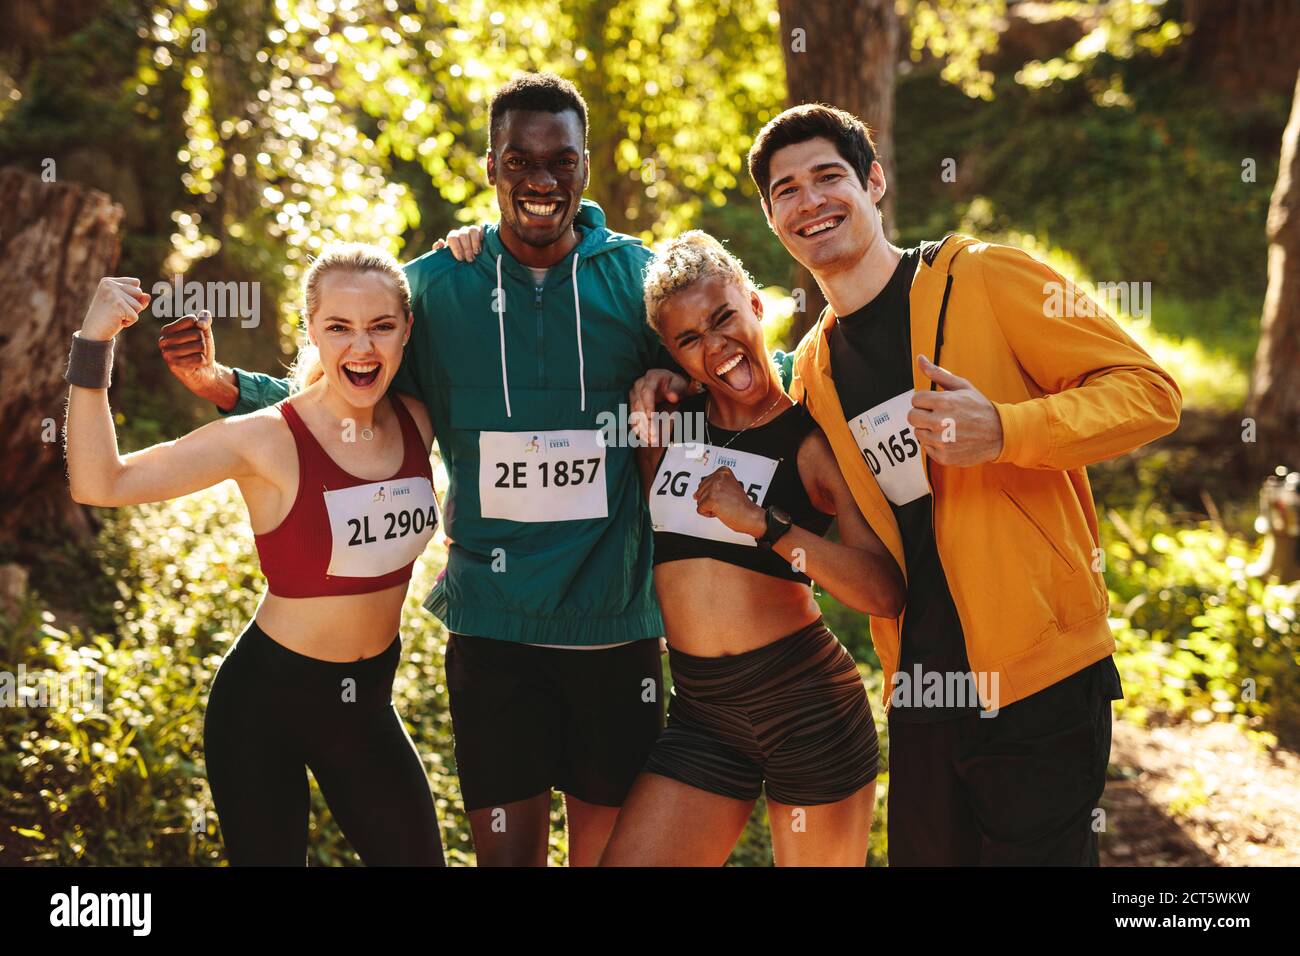 Team von Läufern feiert nach dem Gewinn des Rennens. Glückliche Marathonläufer stehen nach einem Rennen im Wald zusammen. Stockfoto